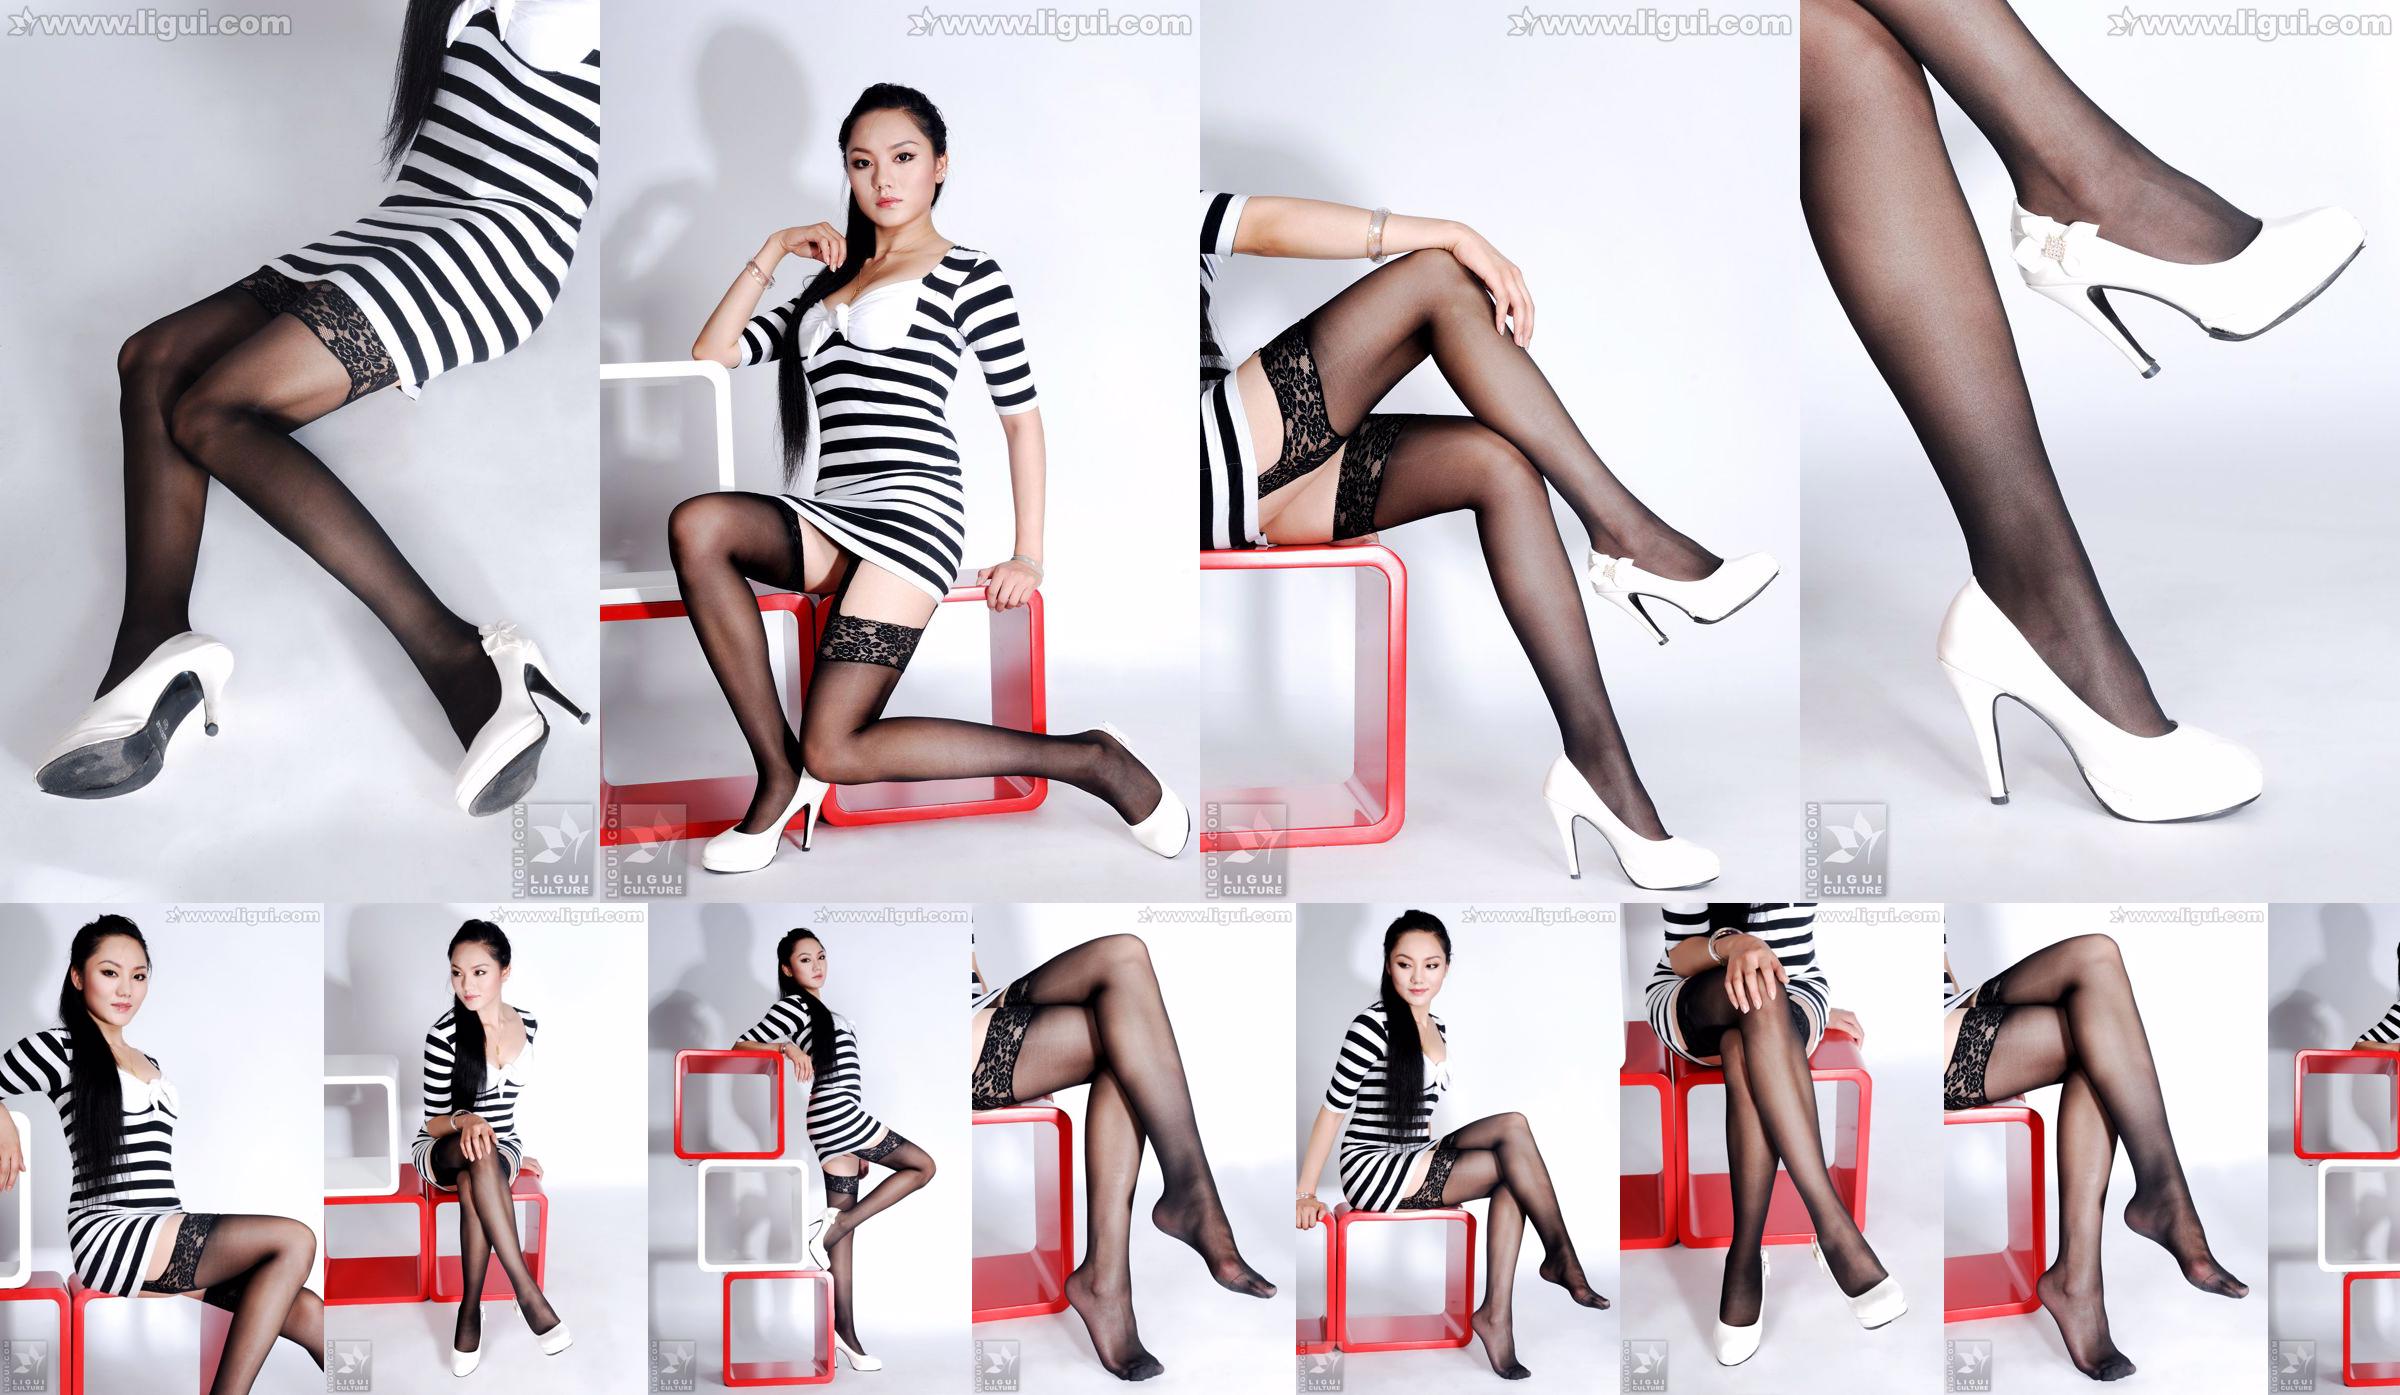 Model Yang Zi „Urok pończoch w prostej dekoracji wnętrz” [丽 柜 LiGui] Zdjęcie pięknych nóg i nefrytowych stóp No.1013bd Strona 1